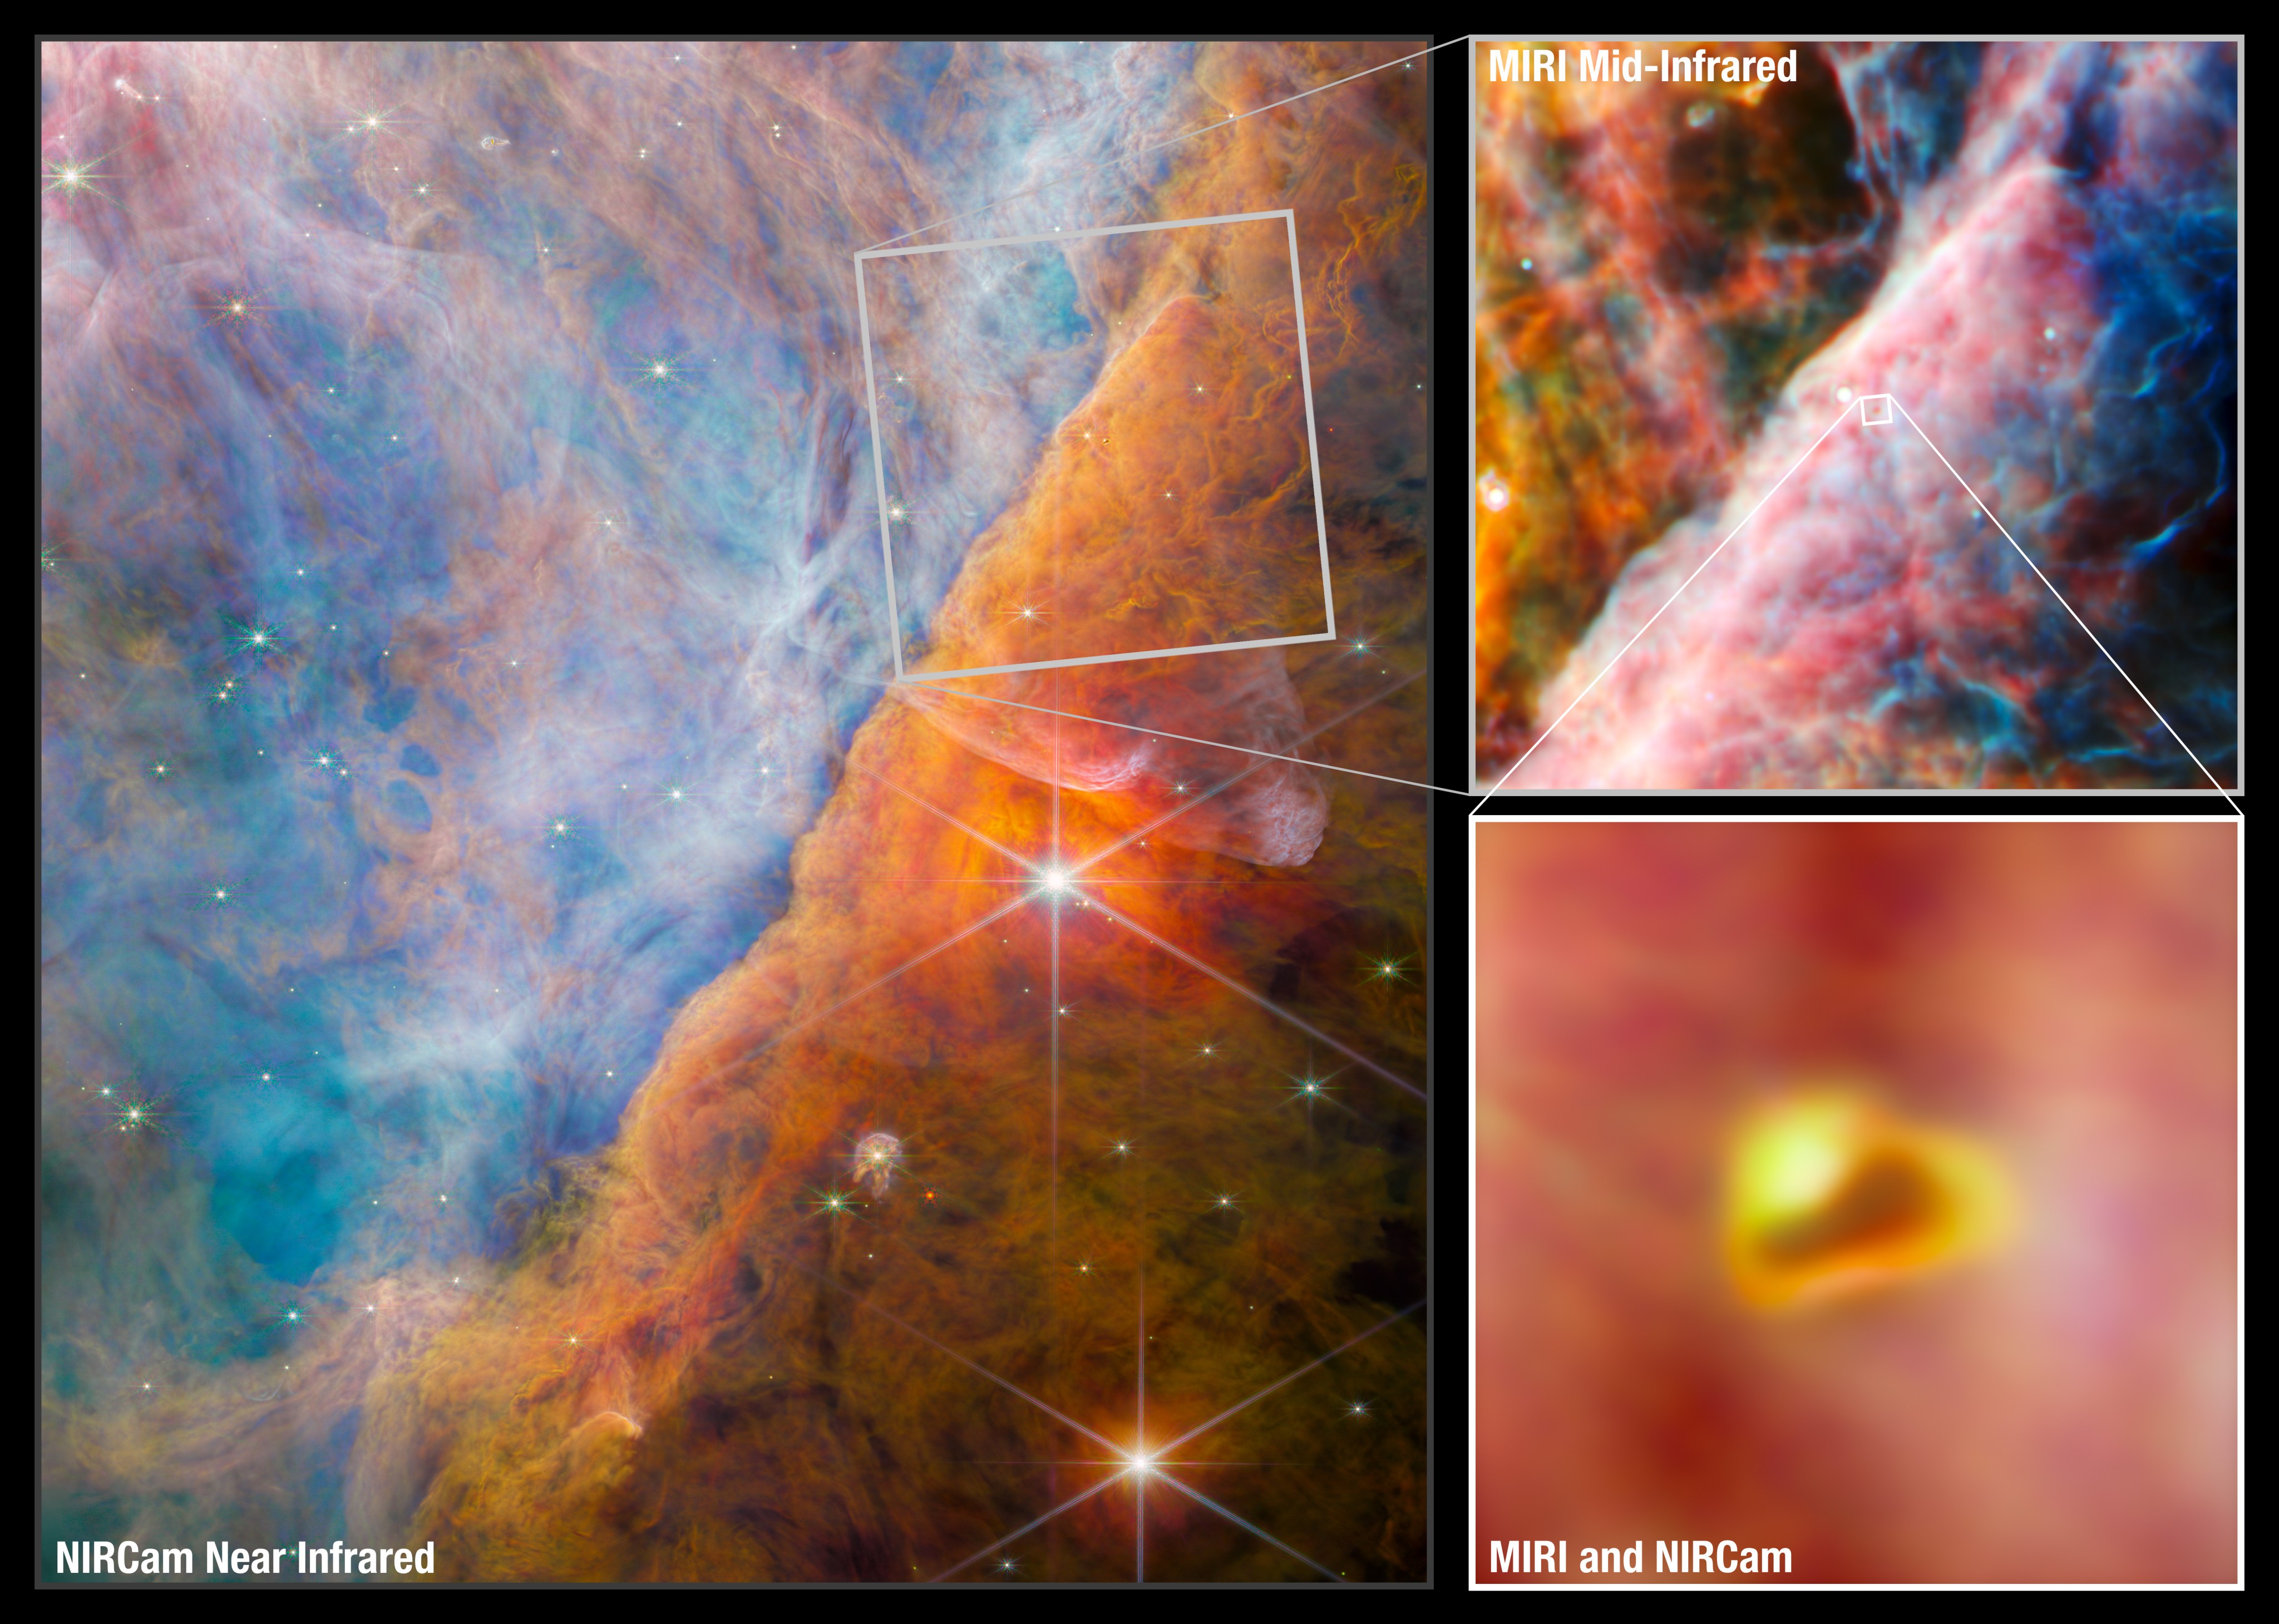 Un'immagine composta da tre pannelli.  La più grande a sinistra mostra l'immagine NIRCam di una nebulosa con due stelle luminose.  Nuvole fluttuanti e multicolori riempiono il campo visivo.  La scena è divisa da una formazione ondulata che va dal basso a sinistra all'alto a destra.  Sul lato sinistro, le nuvole sono di varie tonalità di blu con alcuni ciuffi arancioni traslucidi ovunque.  Sul lato destro, le nuvole variano dal rosso-arancio brillante al marrone man mano che si va da sinistra a destra.